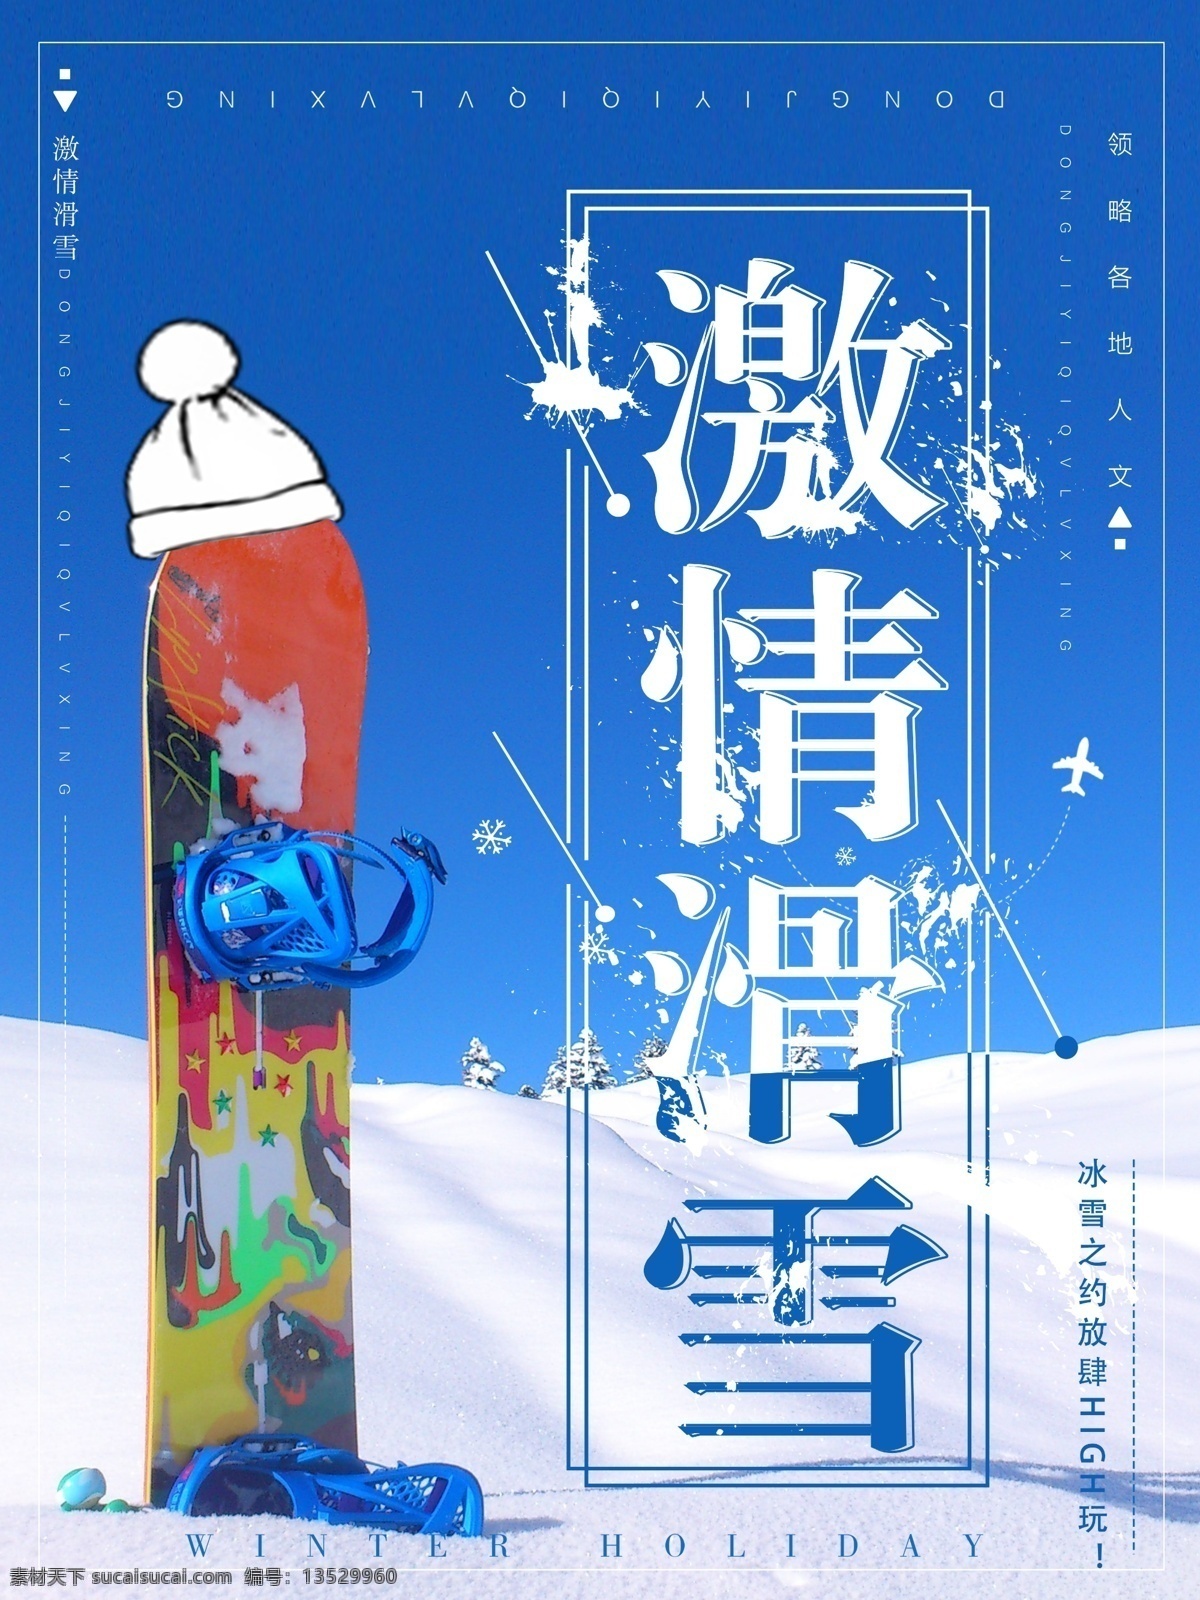 蓝色 简约 激情 滑雪 海报 简约海报 蓝天 白雪 滑板 激情滑雪 滑雪海报